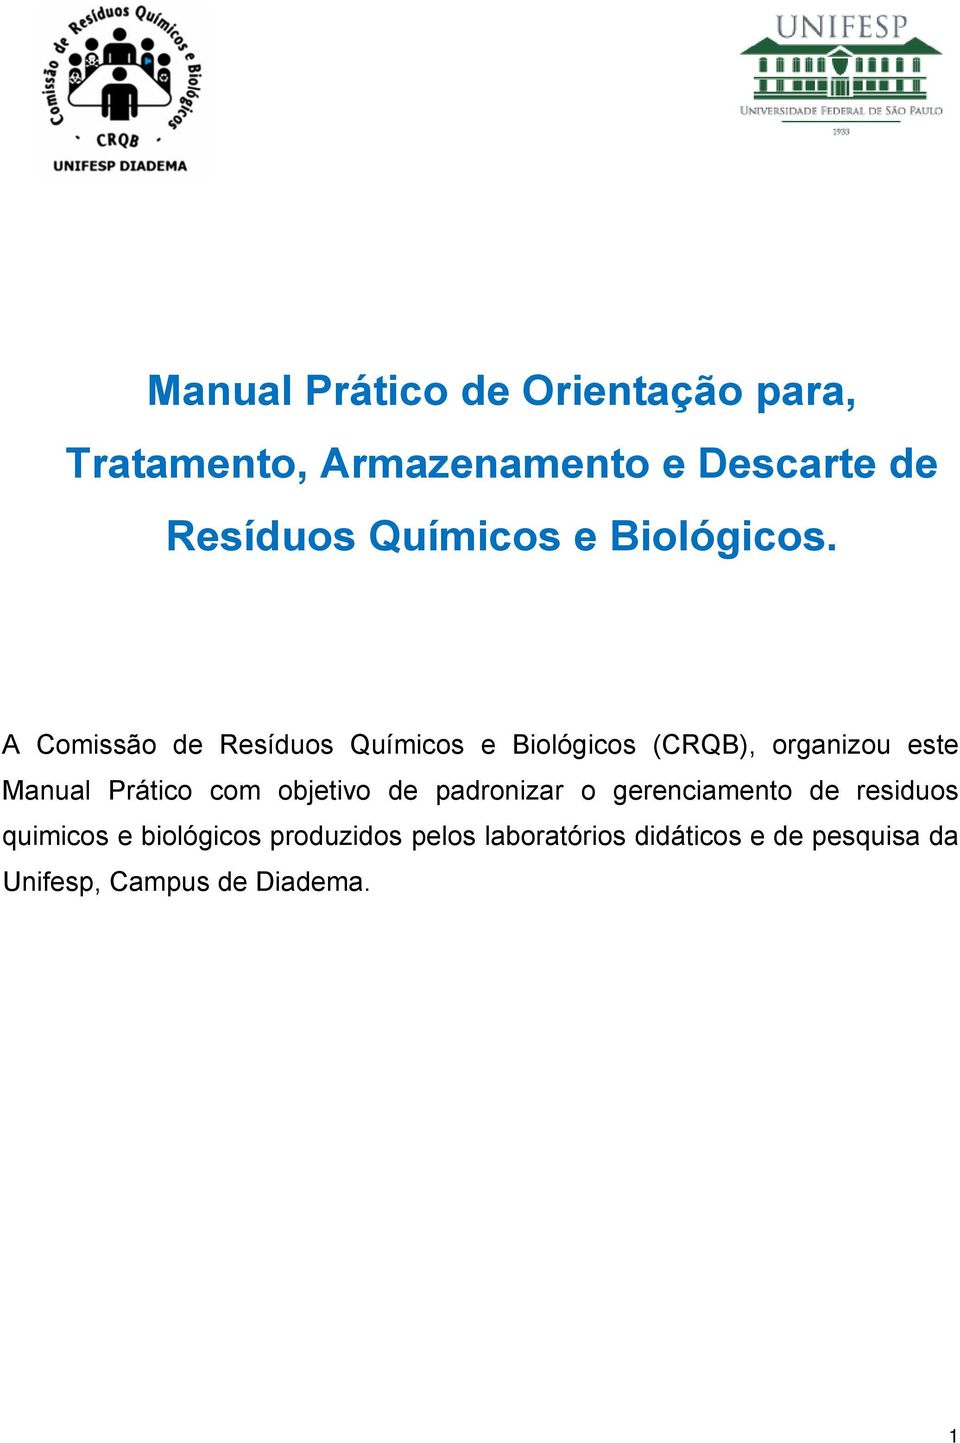 A Comissão de Resíduos Químicos e Biológicos (CRQB), organizou este Manual Prático com